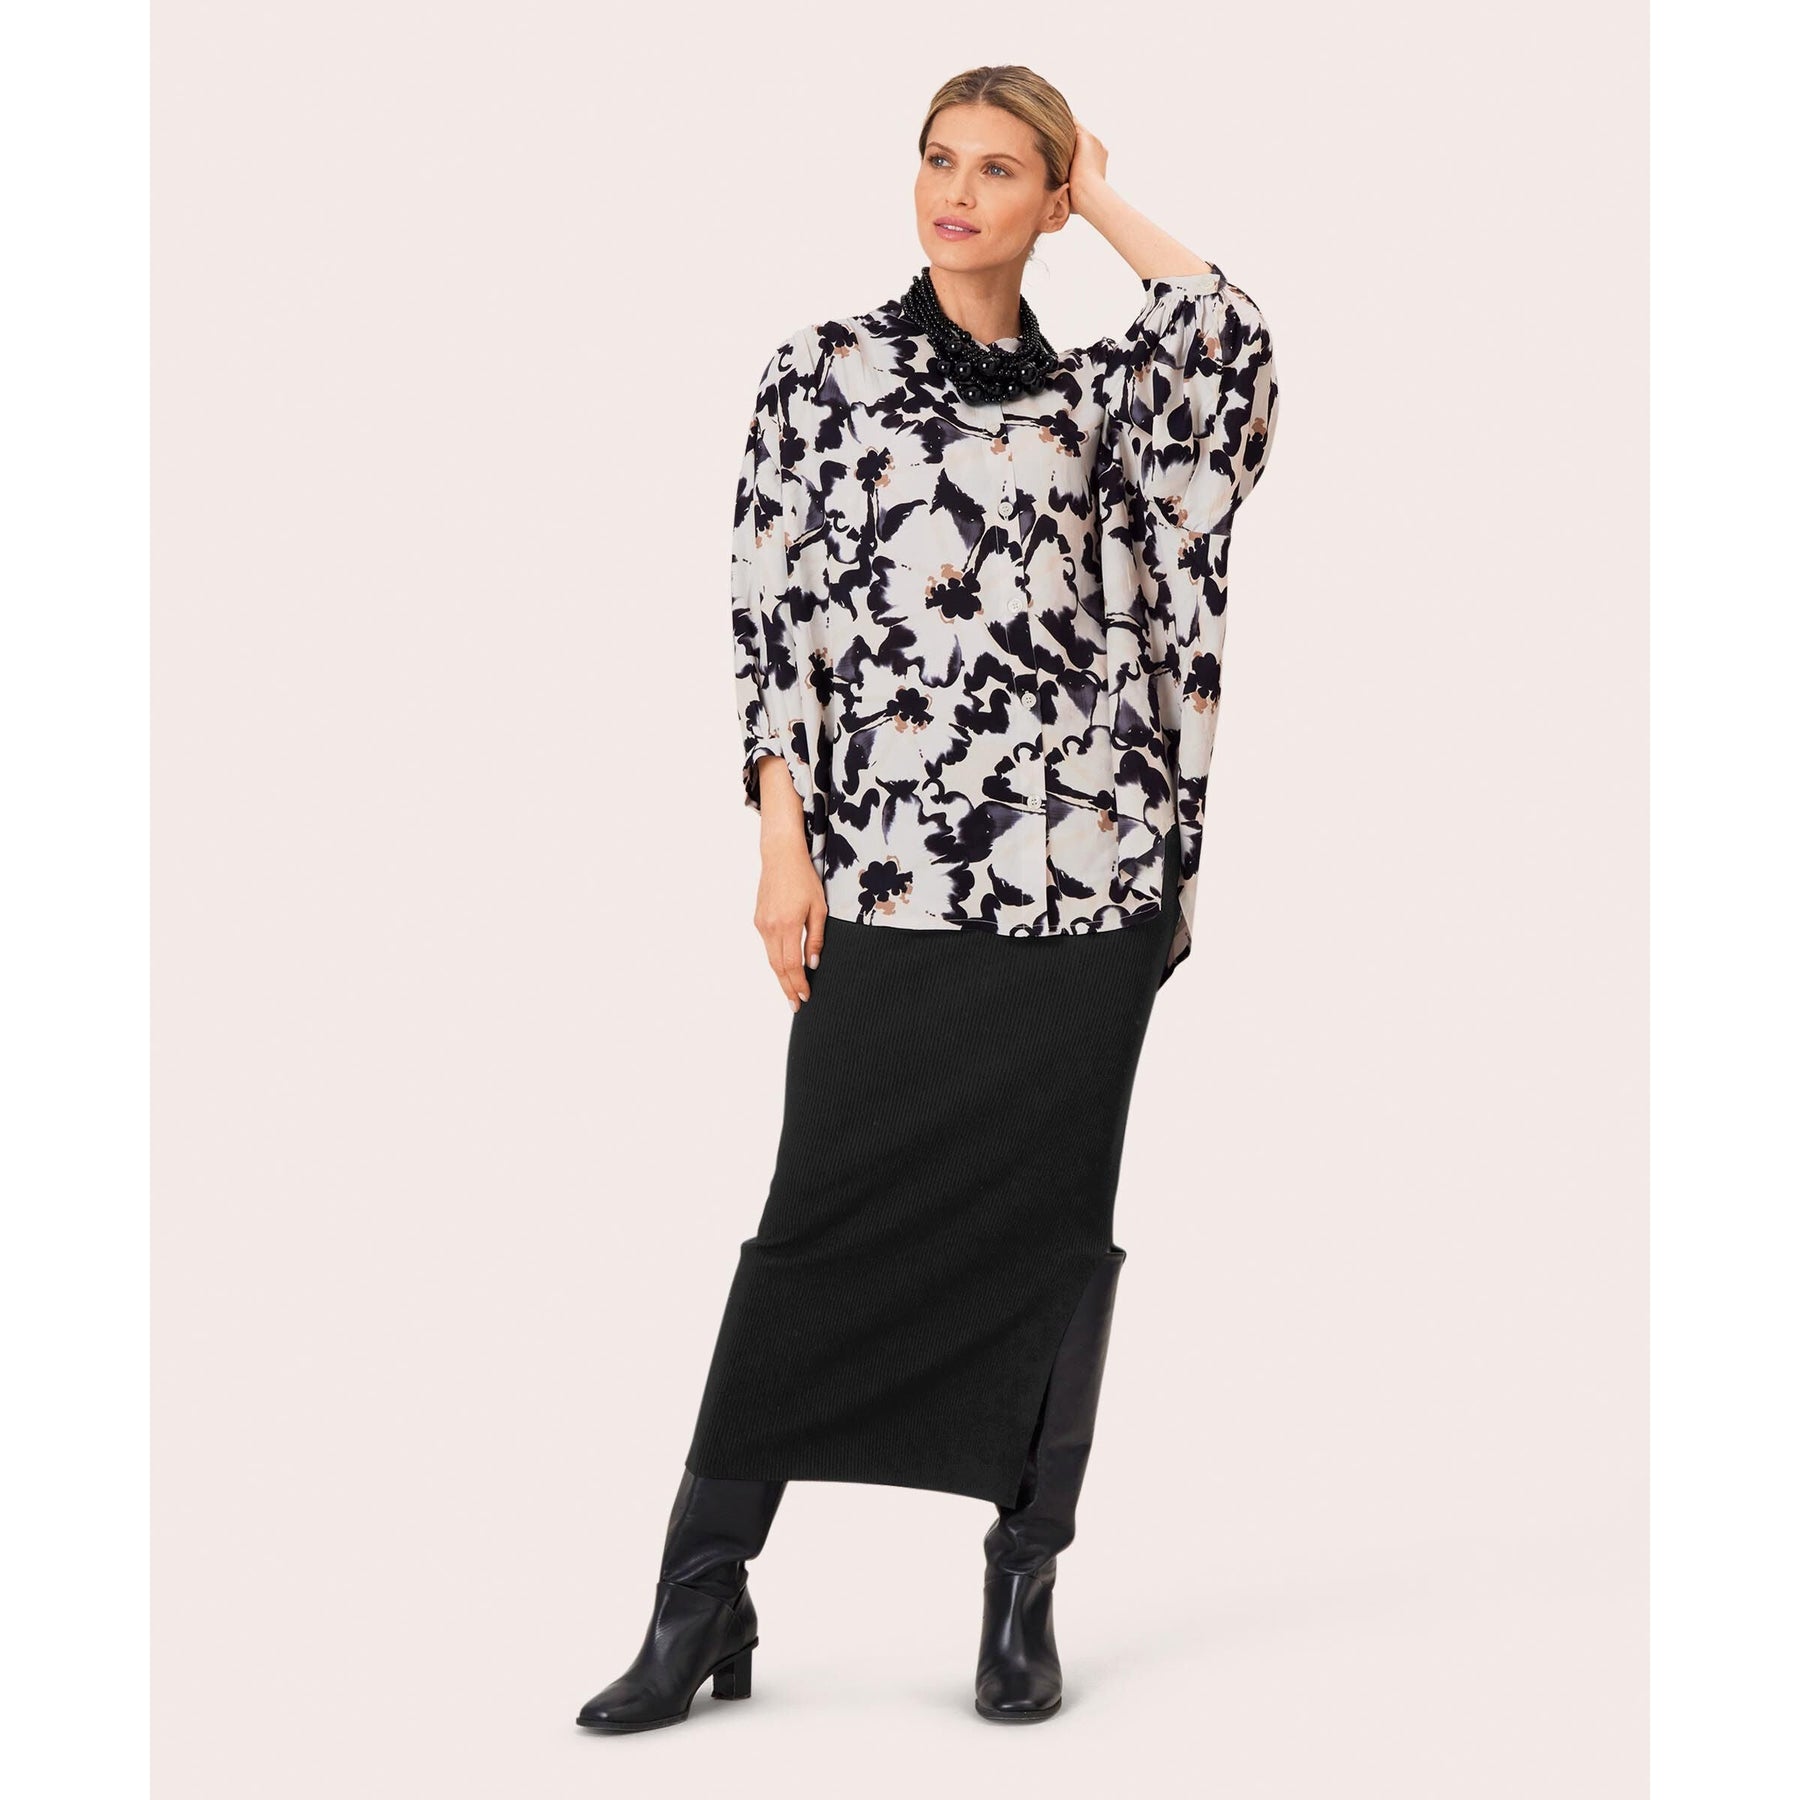 Masai Sybille Fine Knit Skirt in Black - Wardrobe Plus